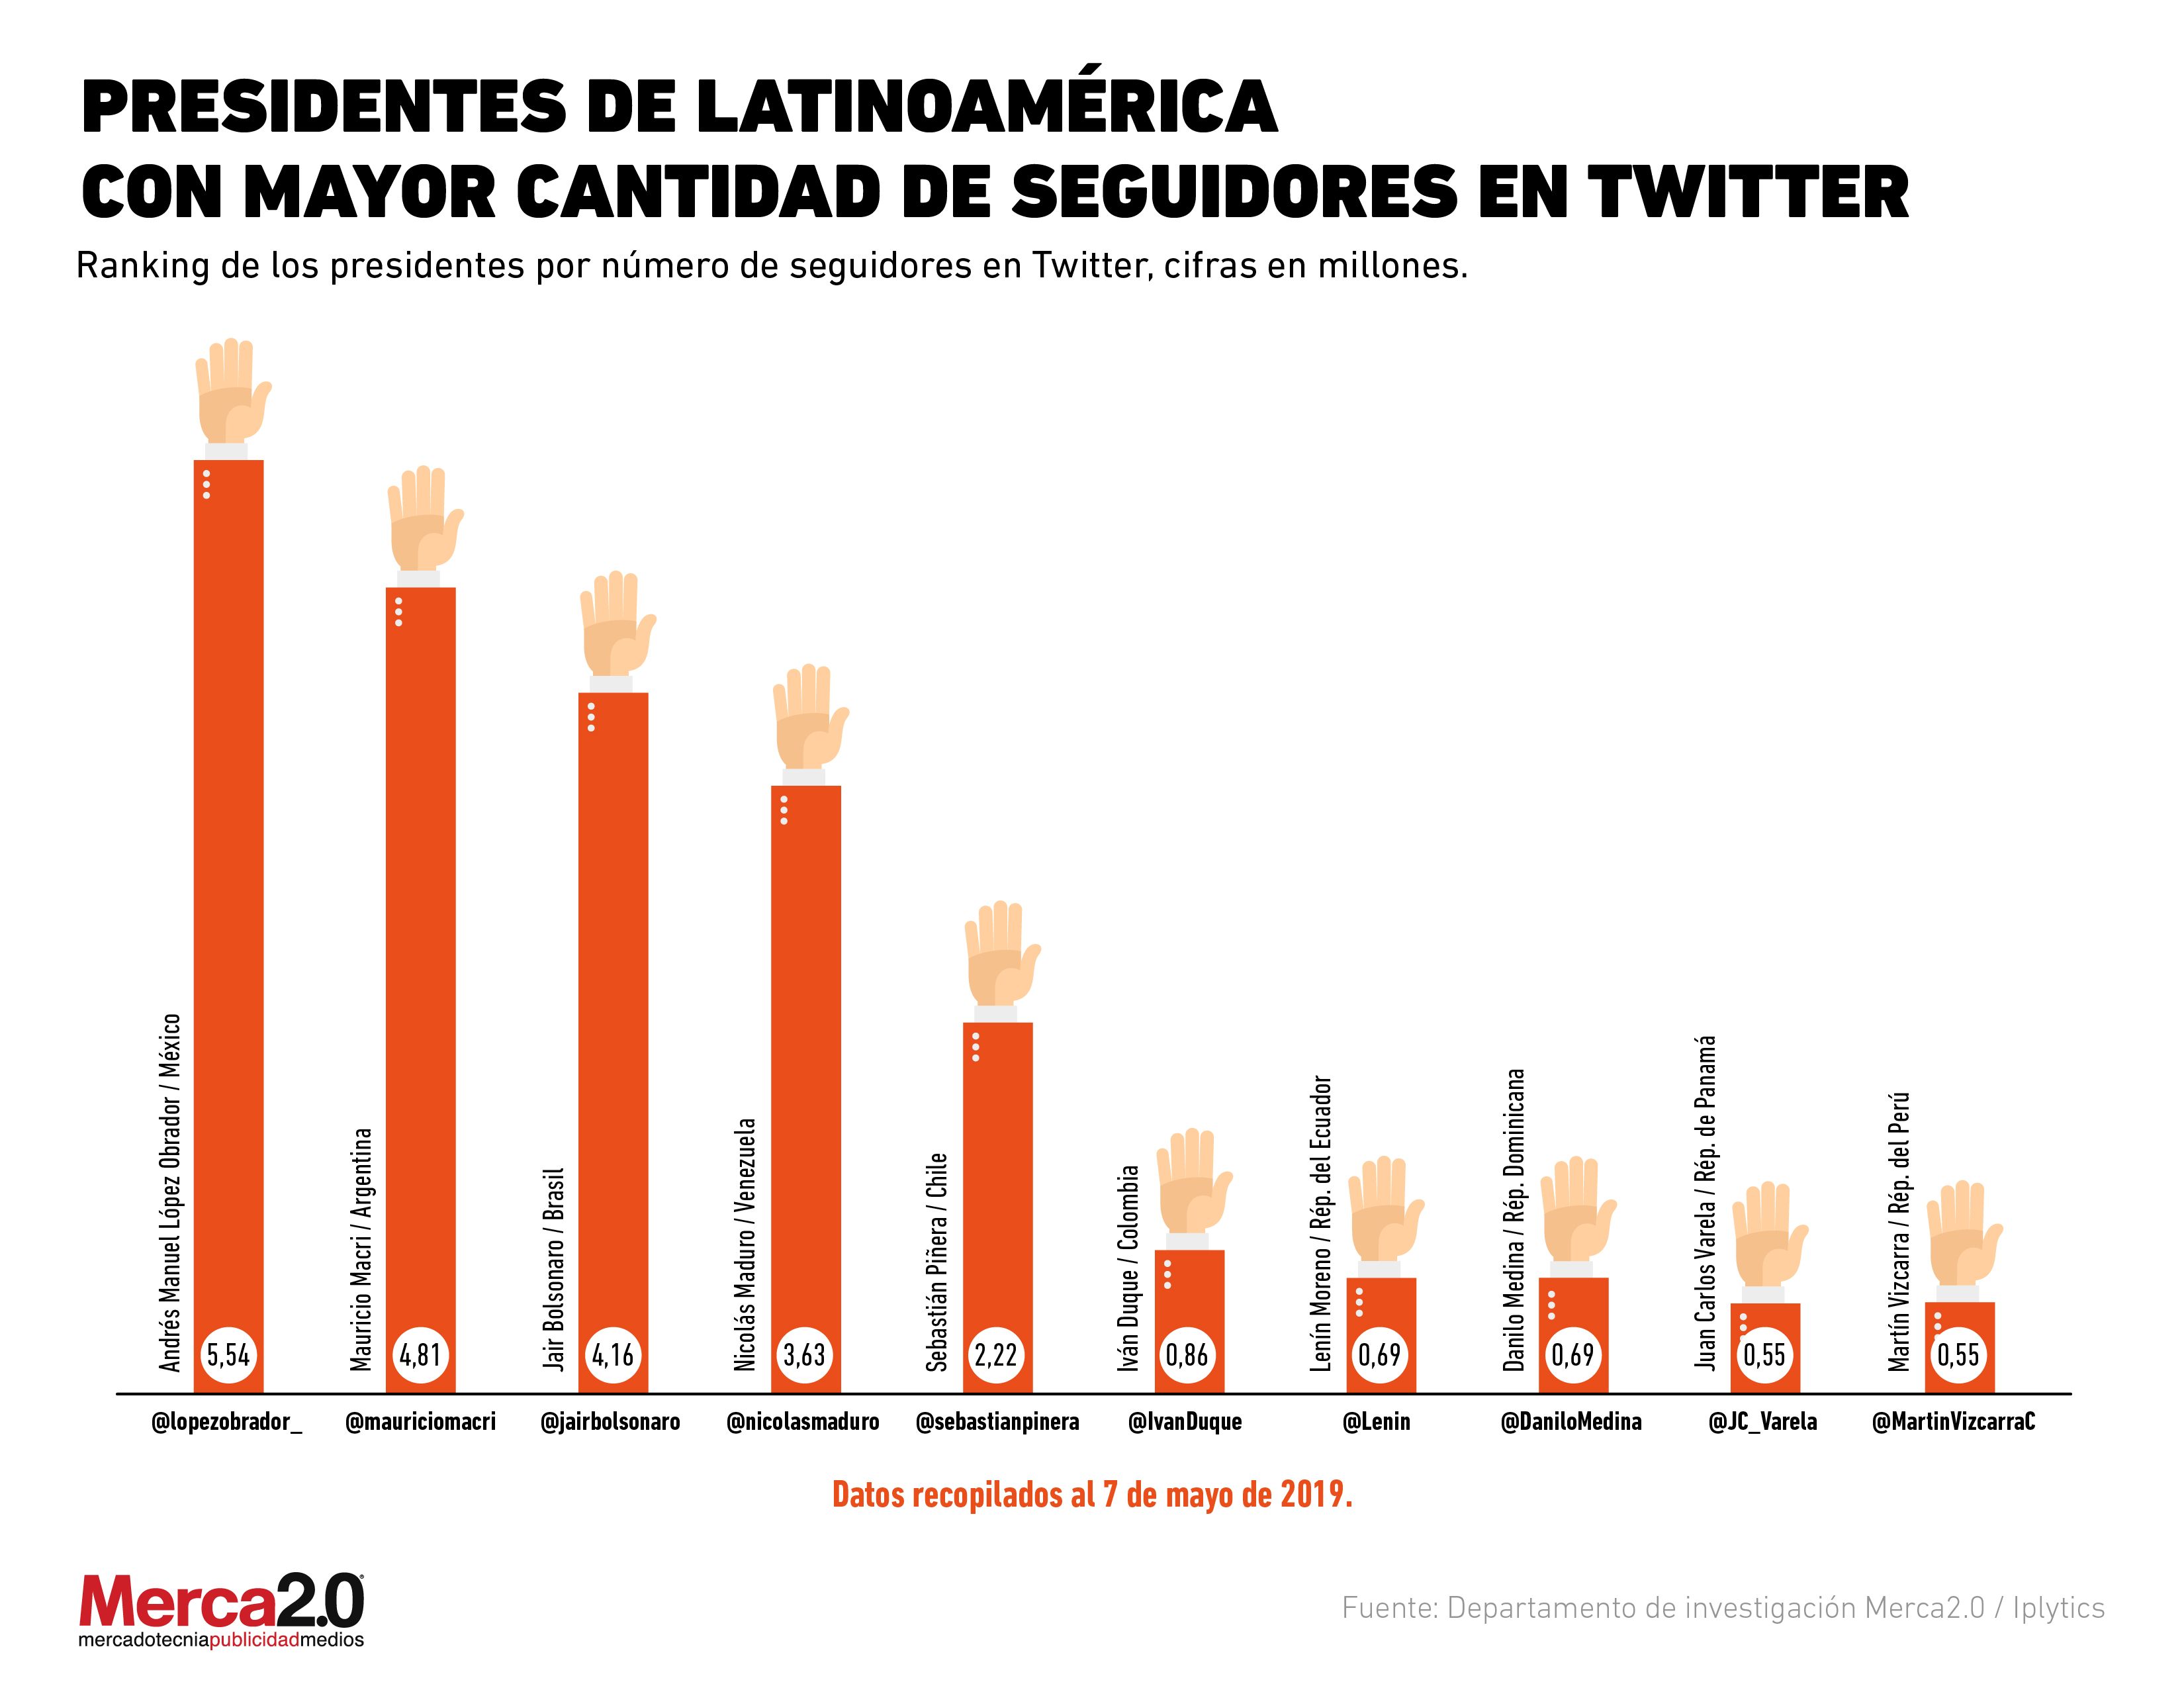 ¿Quiénes son los presidentes latinoamericanos más populares en Twitter?